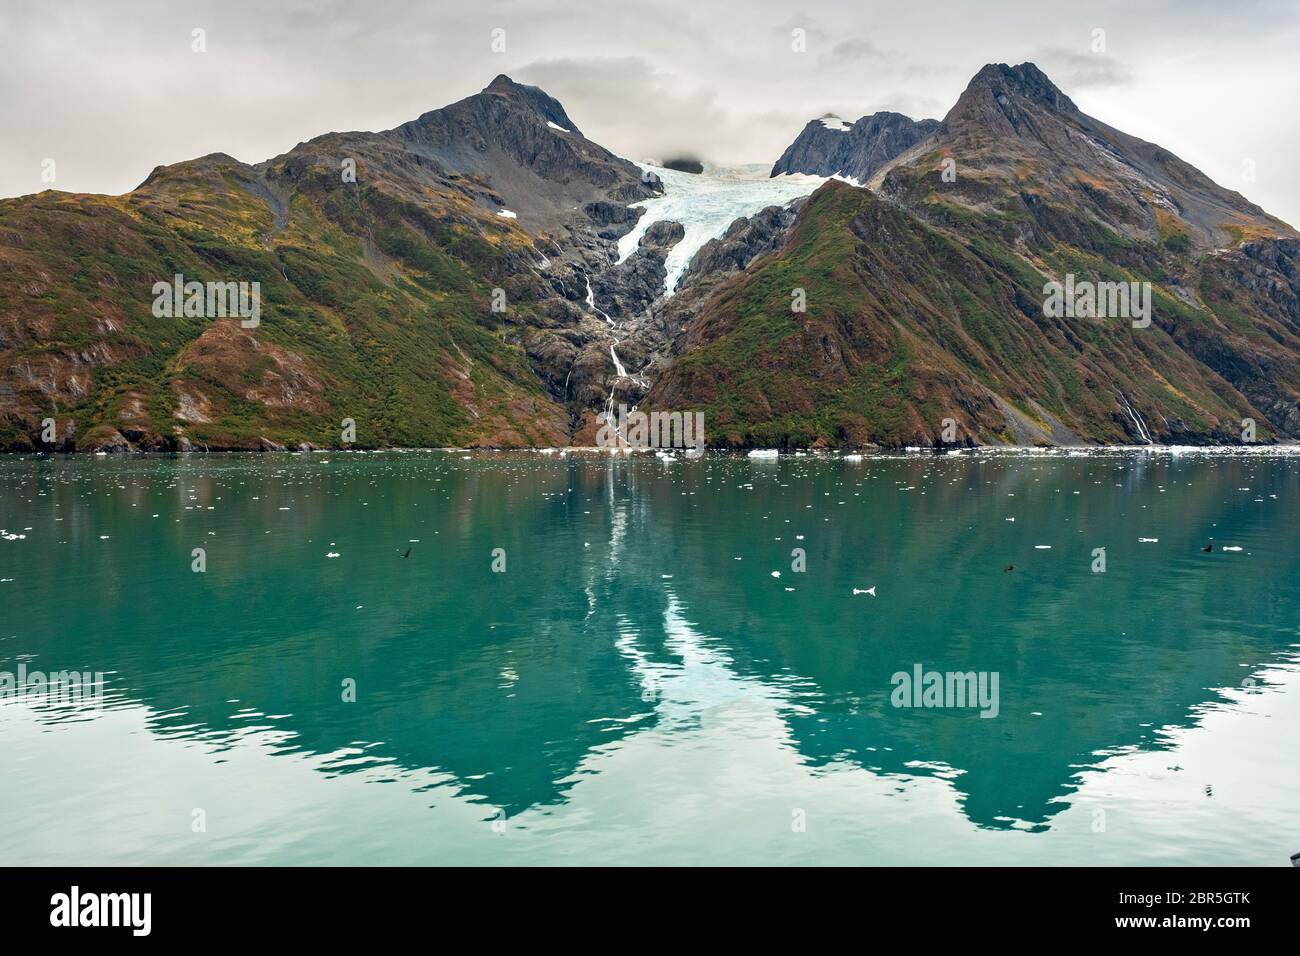 Derrita las cascadas de agua por el Monte Gilbert desde el Glaciar Serpentine en Barry Arm en el fiordo Harriman, cerca de Whittier, Alaska. El glaciar se ha retredado dramáticamente de un glaciar de aguas residuales a convertirse en un glaciar colgante. Foto de stock